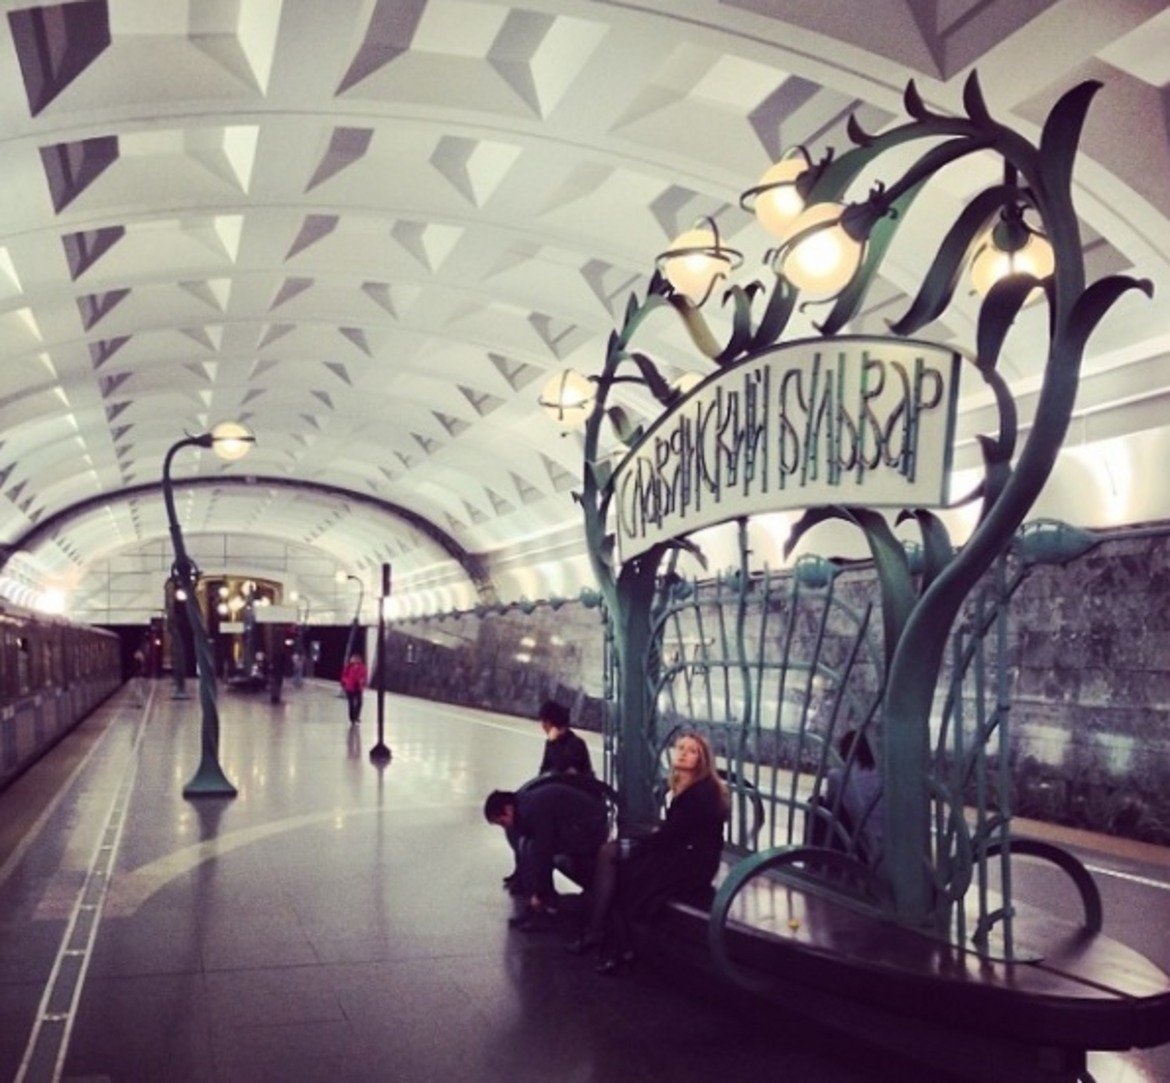  Станция "Булевард Славянски" 

Тази метростанция е сравнително нова и модерна като визия. Все пак обаче не е избягала от традициите при конструкцията на метрото в Москва, което има амбициите да се нарича "подземен дворец". Само че тук няма пищни арки и скъпоценни метали на килограм. Подходът е доста по-минималистичен и скромен и е заимстван от парижкото метро. 

Е, все пак стените са от зелен мрамор, донесен от Кубан, а подът – от сив гранит и мрамор. Металните зелени основи на фенерите, вградени в платформата, трябва да напомнят дървета на фона на чист, белезникав таван. Спирката е дело на архитект Волович и е доста плитка по московските стандарти - само 10 метра.